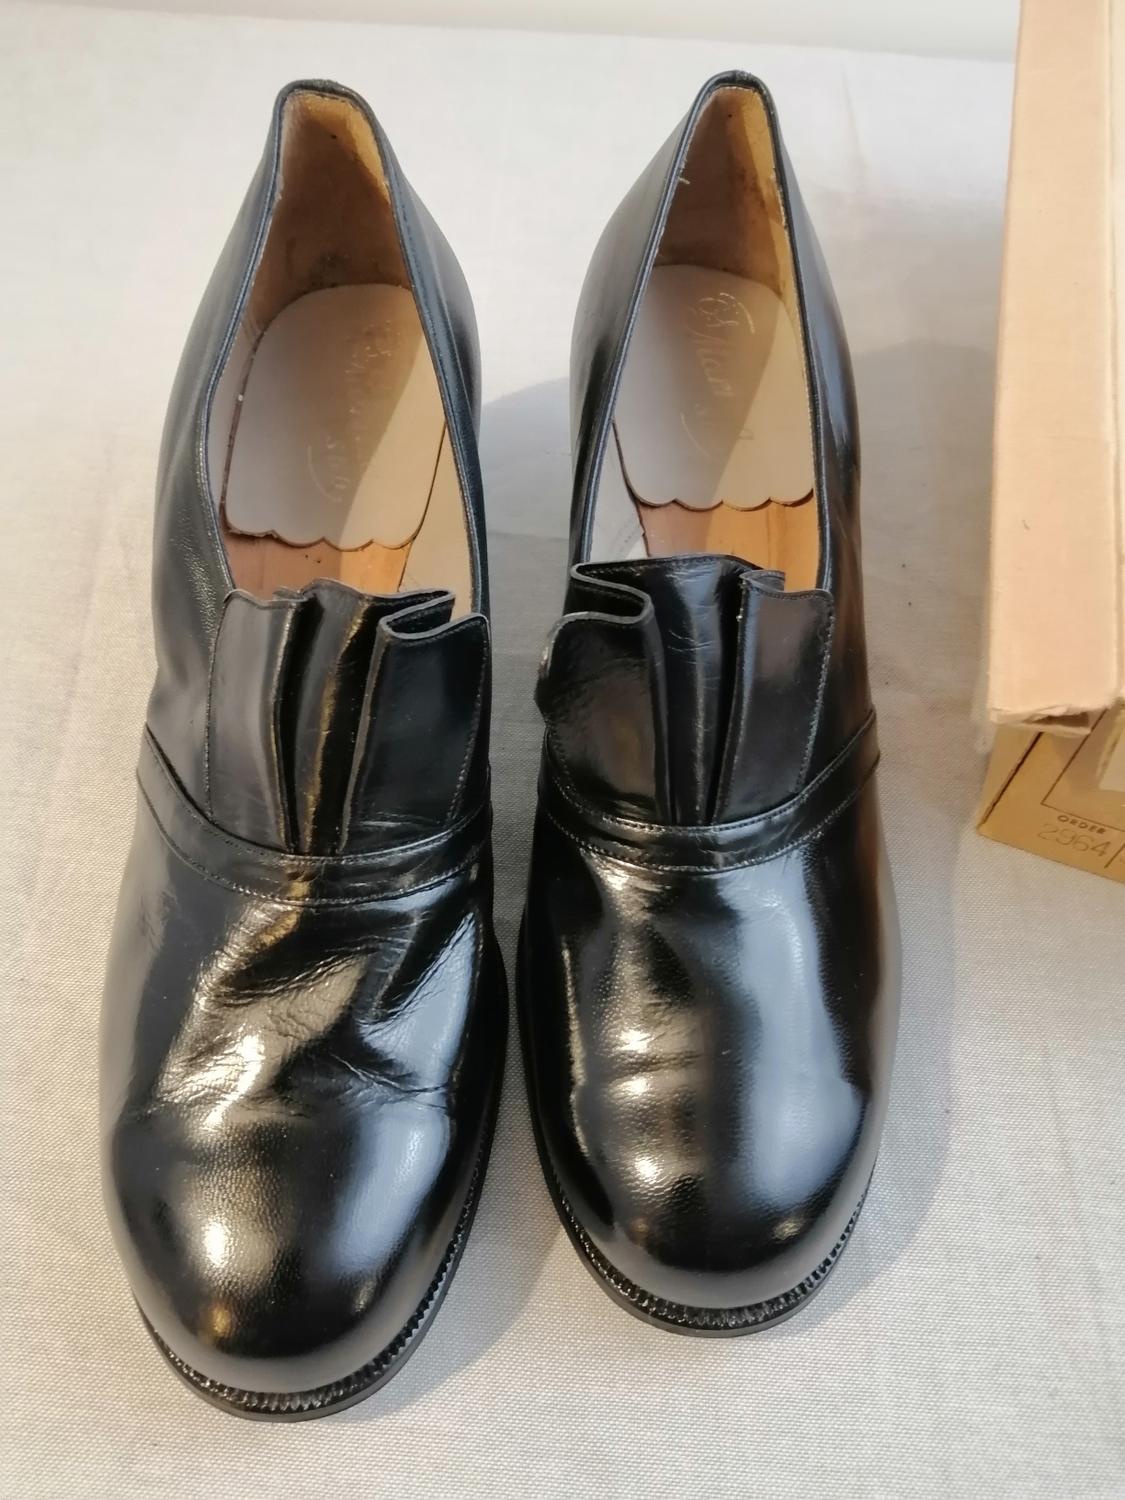 Vintage Maritza svart sko veckad plös mellanklack stl 3,5 ca 36